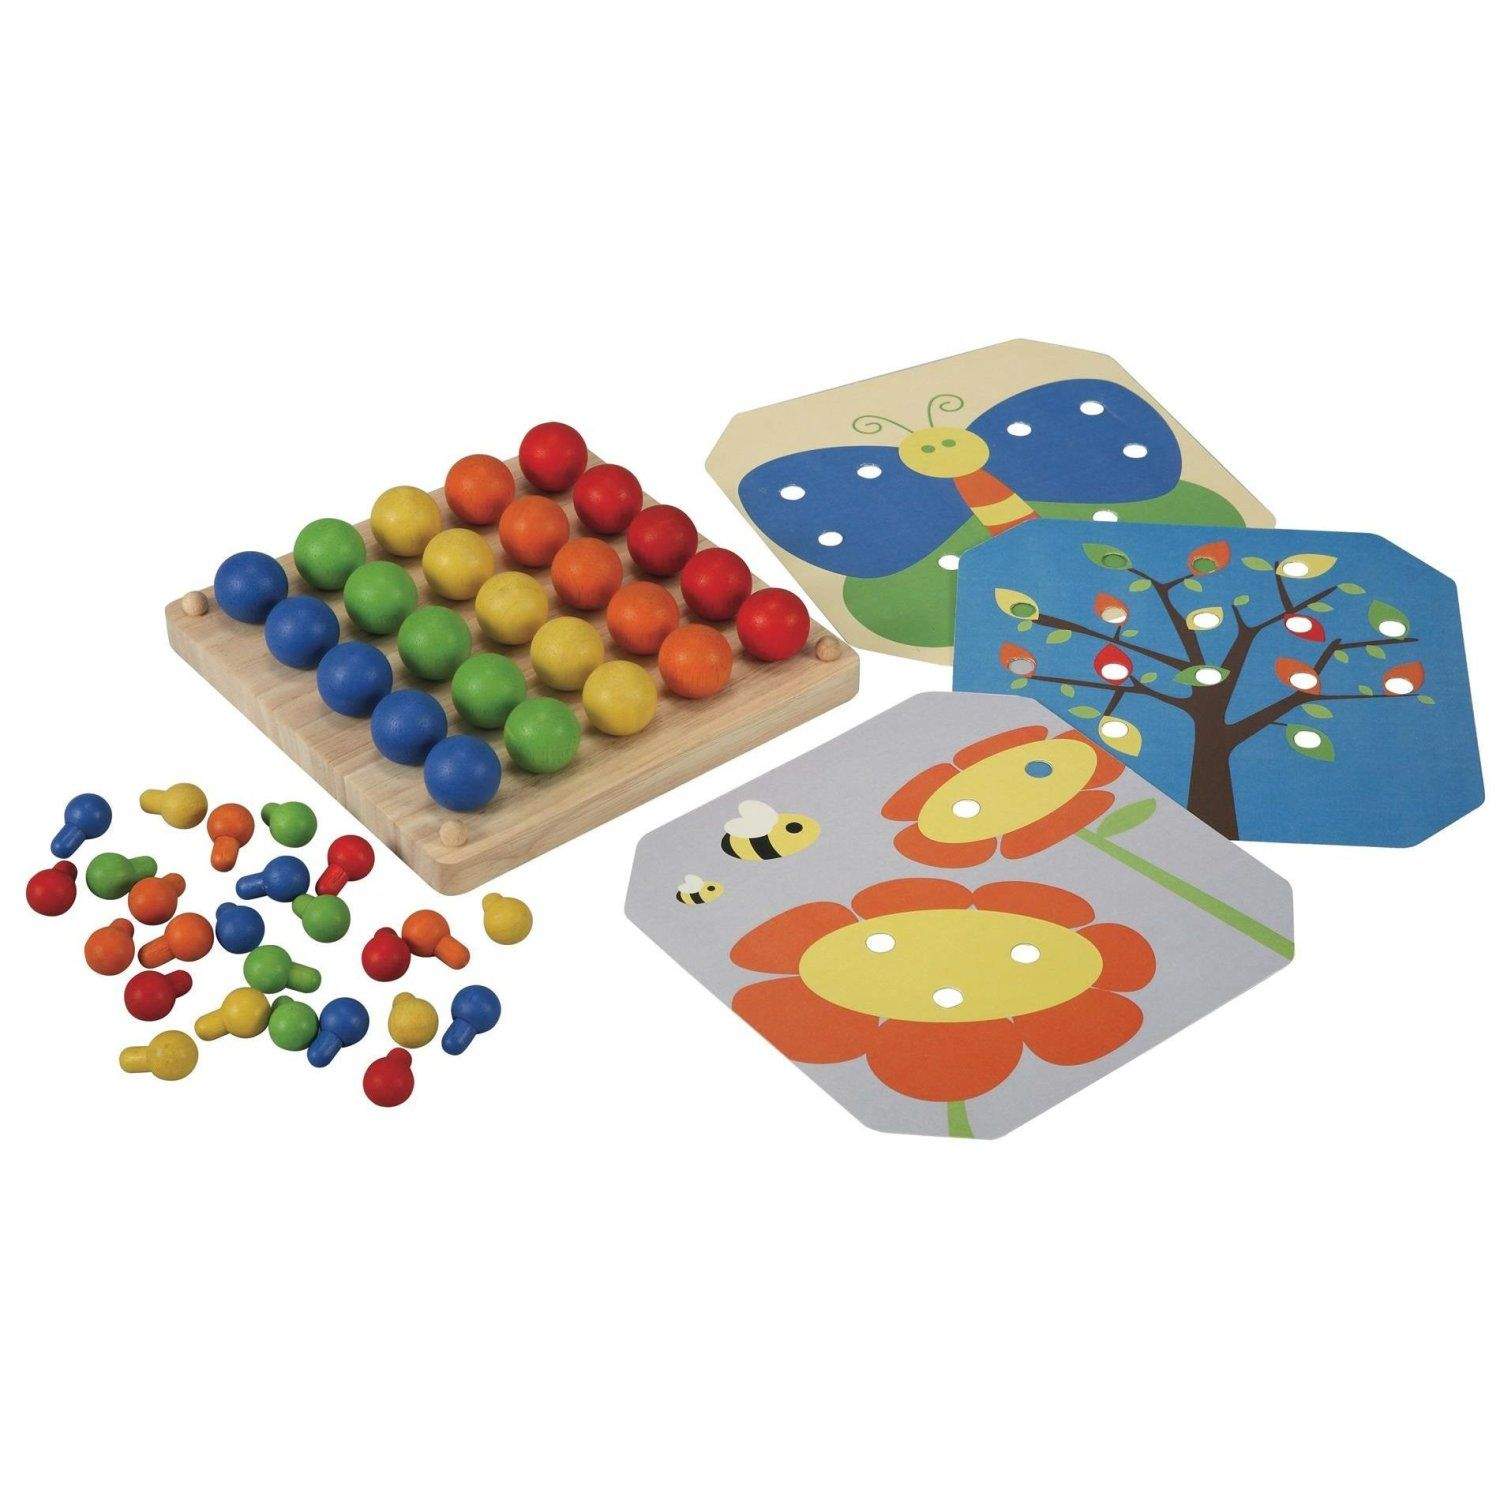 Детские развивающие игры от 3 лет. Мозаика Plan Toys. PLANTOYS мозаика (5162). Мозаика Plan Toys Learning. 1 Toy мозаика Кнопик (т16698).